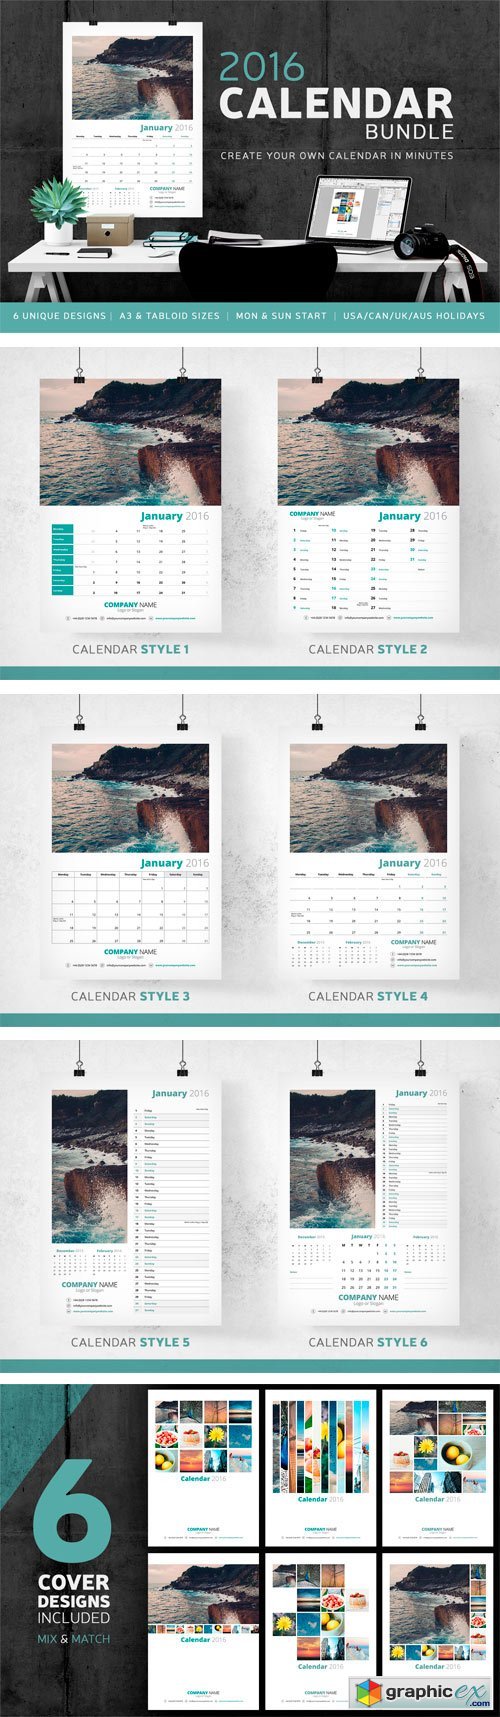 Calendar Bundle - 2016